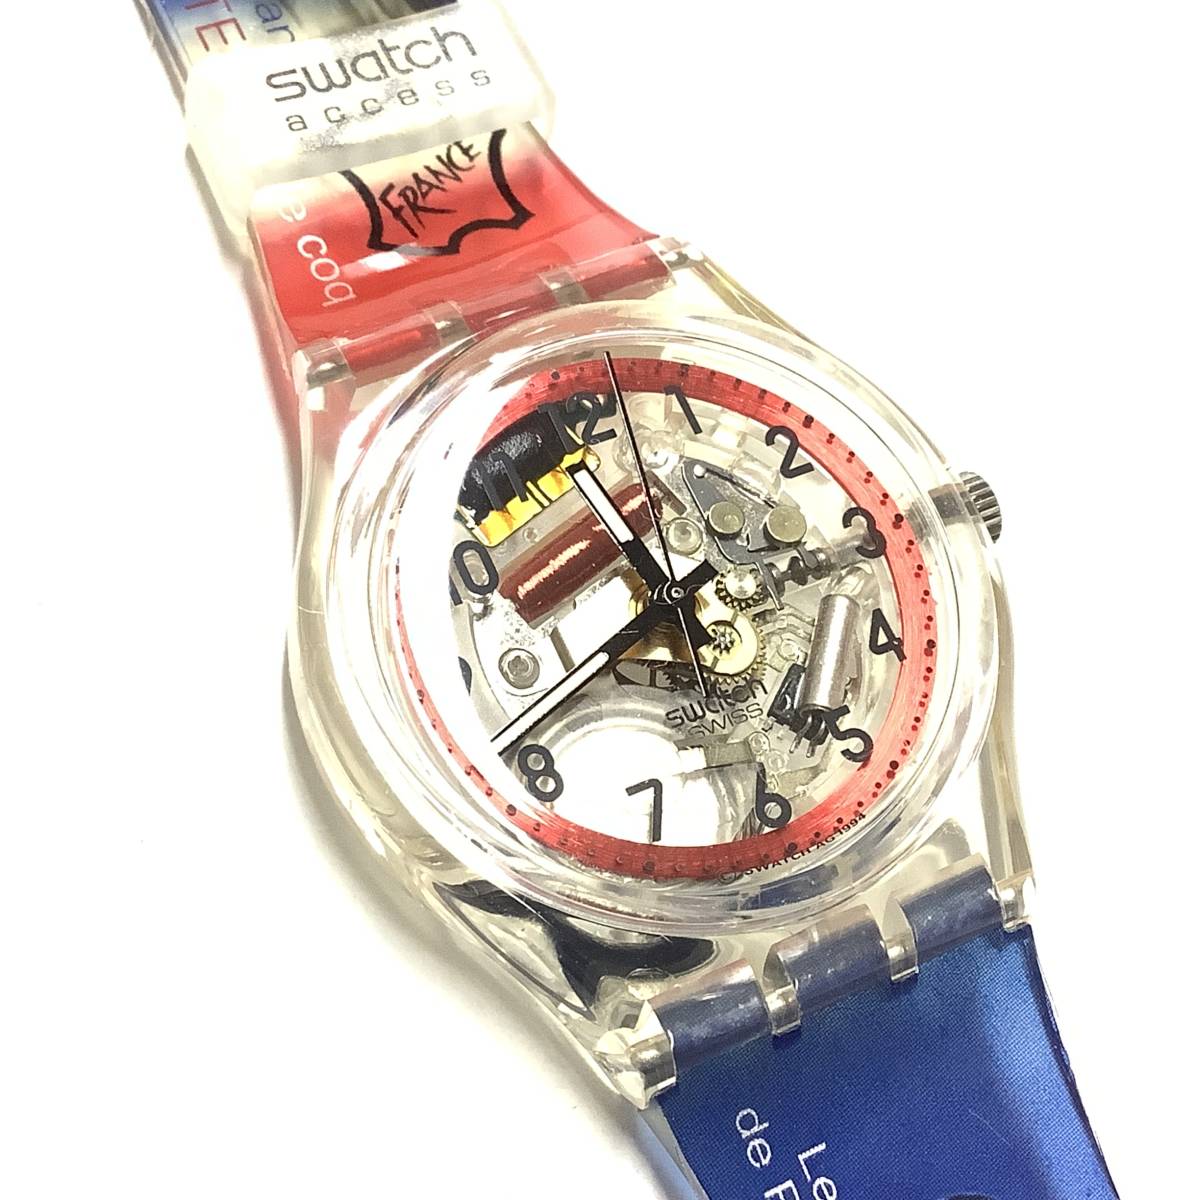 【新品未使用、稼働中】1998年 フランス展 オリジナル限定モデル Swatch スウォッチ ACCESS(アクセス) Le Salon(ル・サロン) 腕時計_画像4